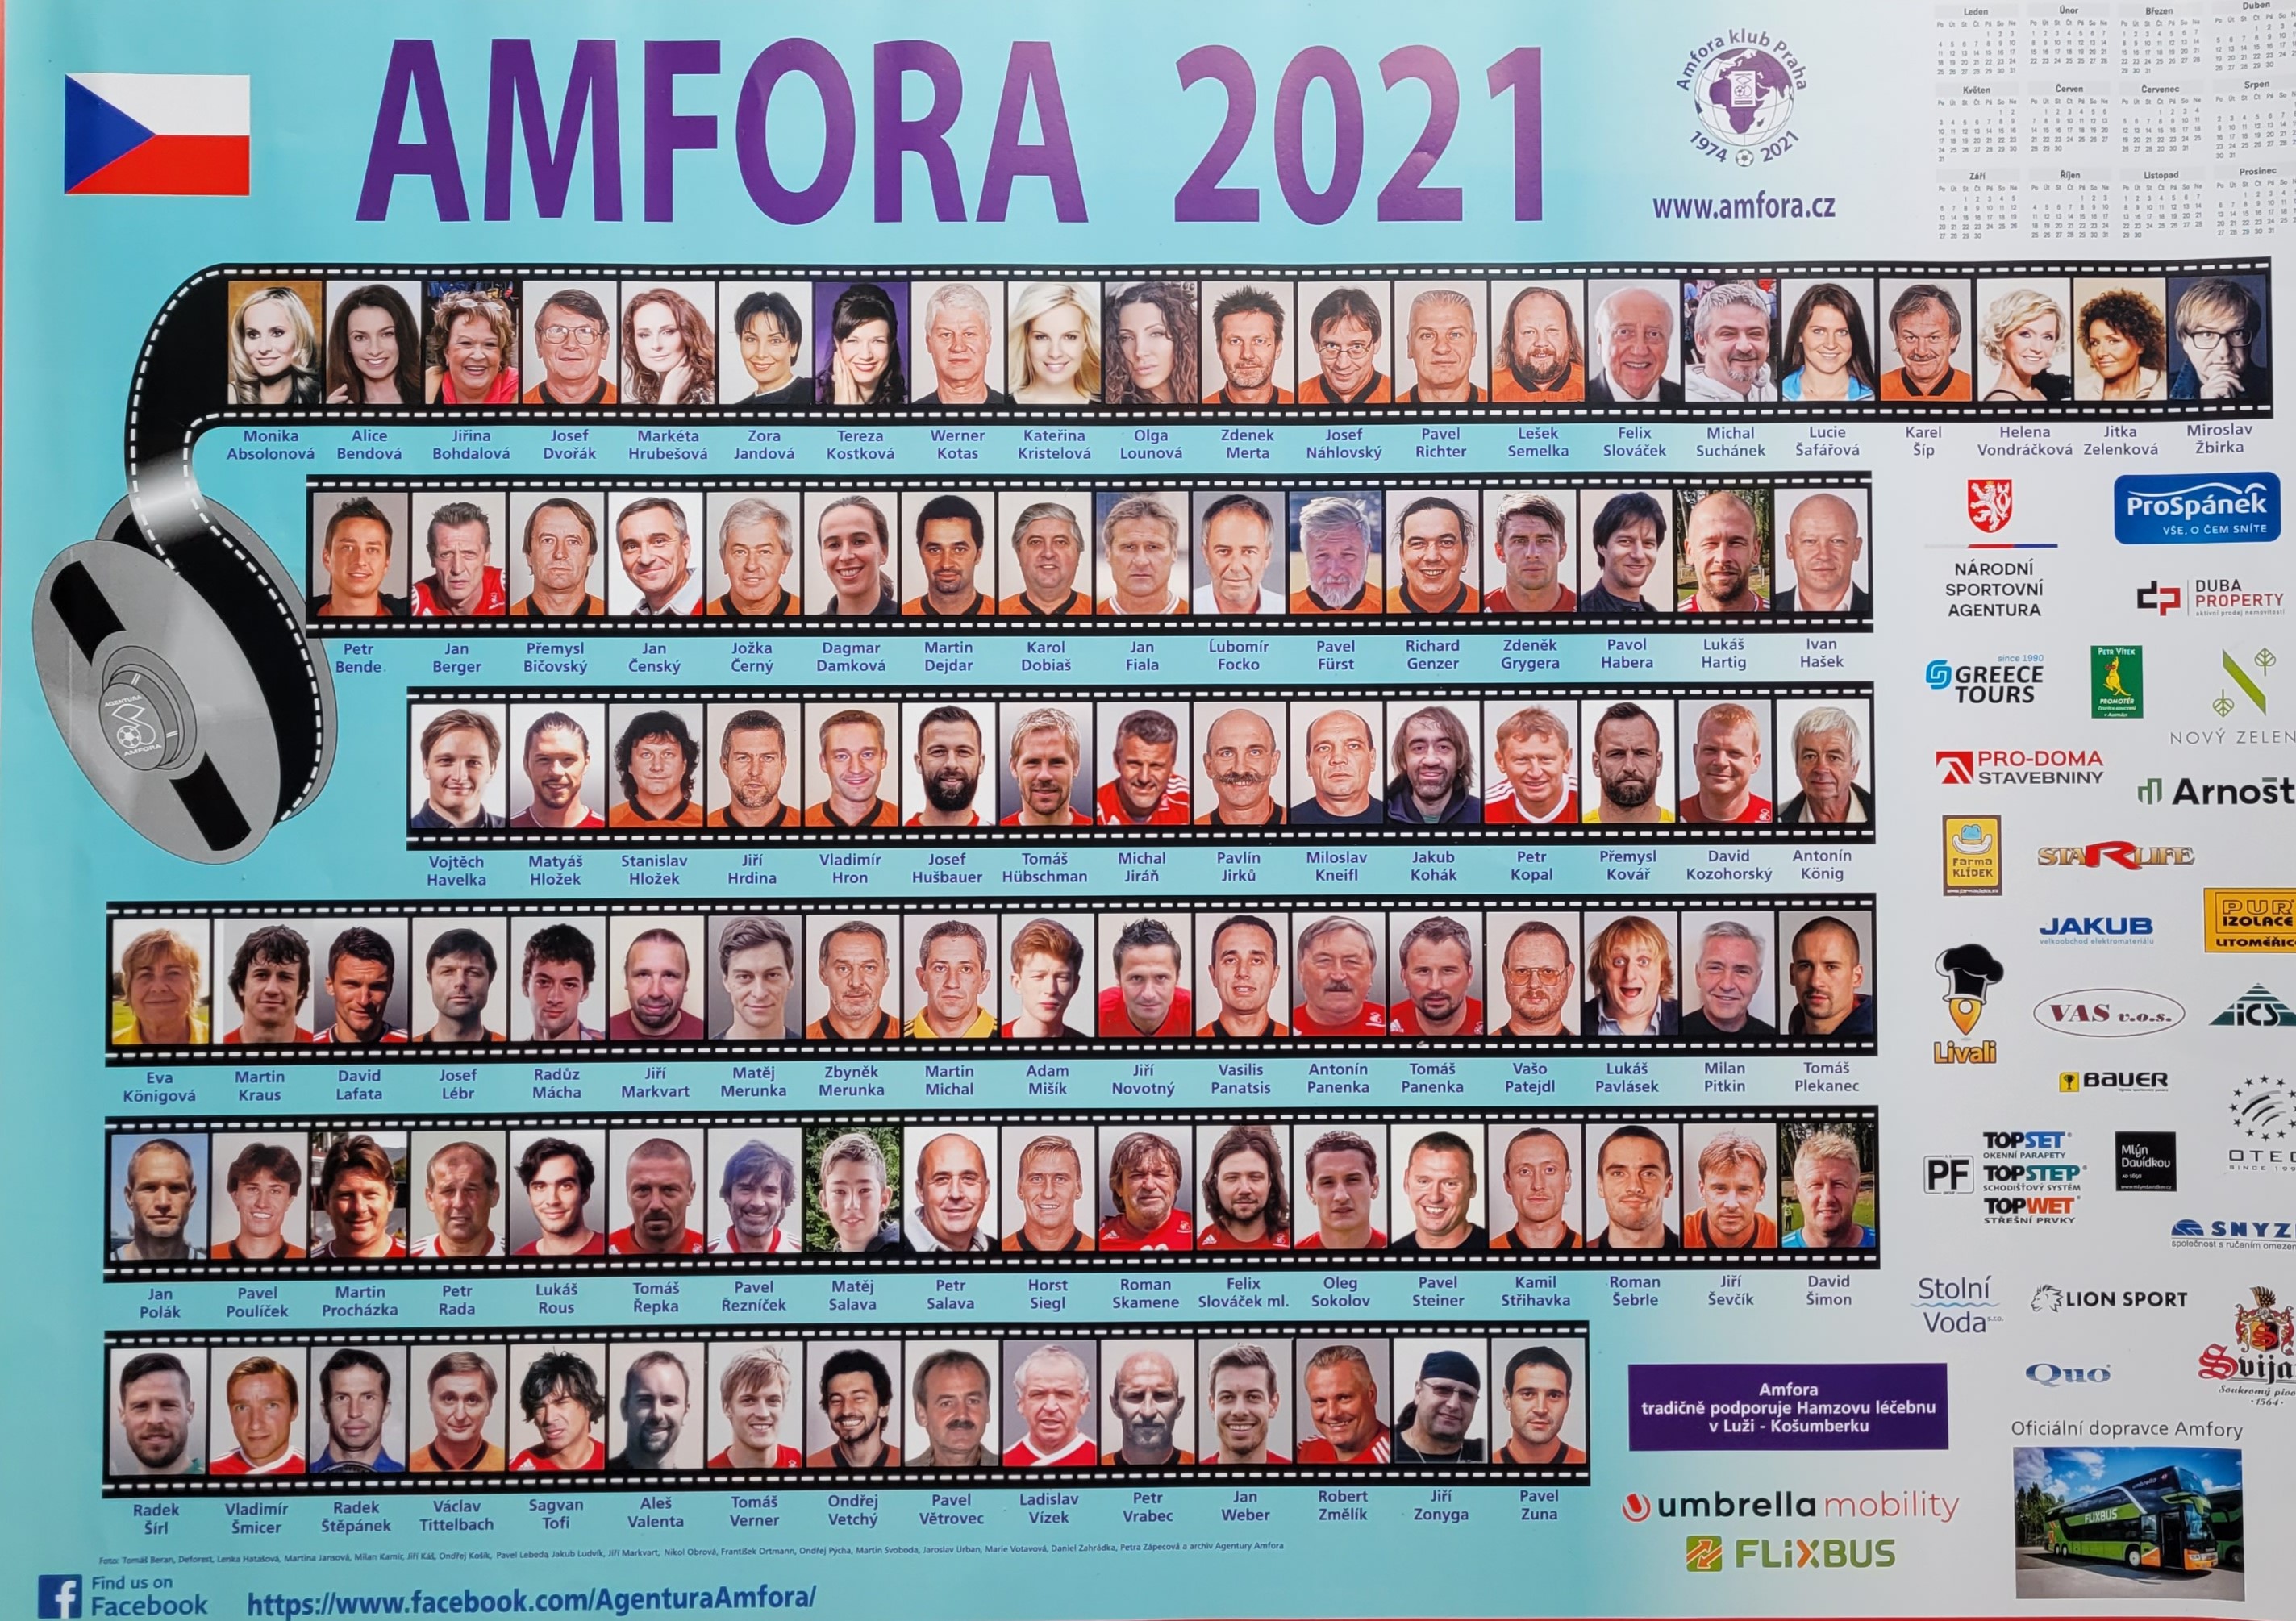 AMFORA 2021